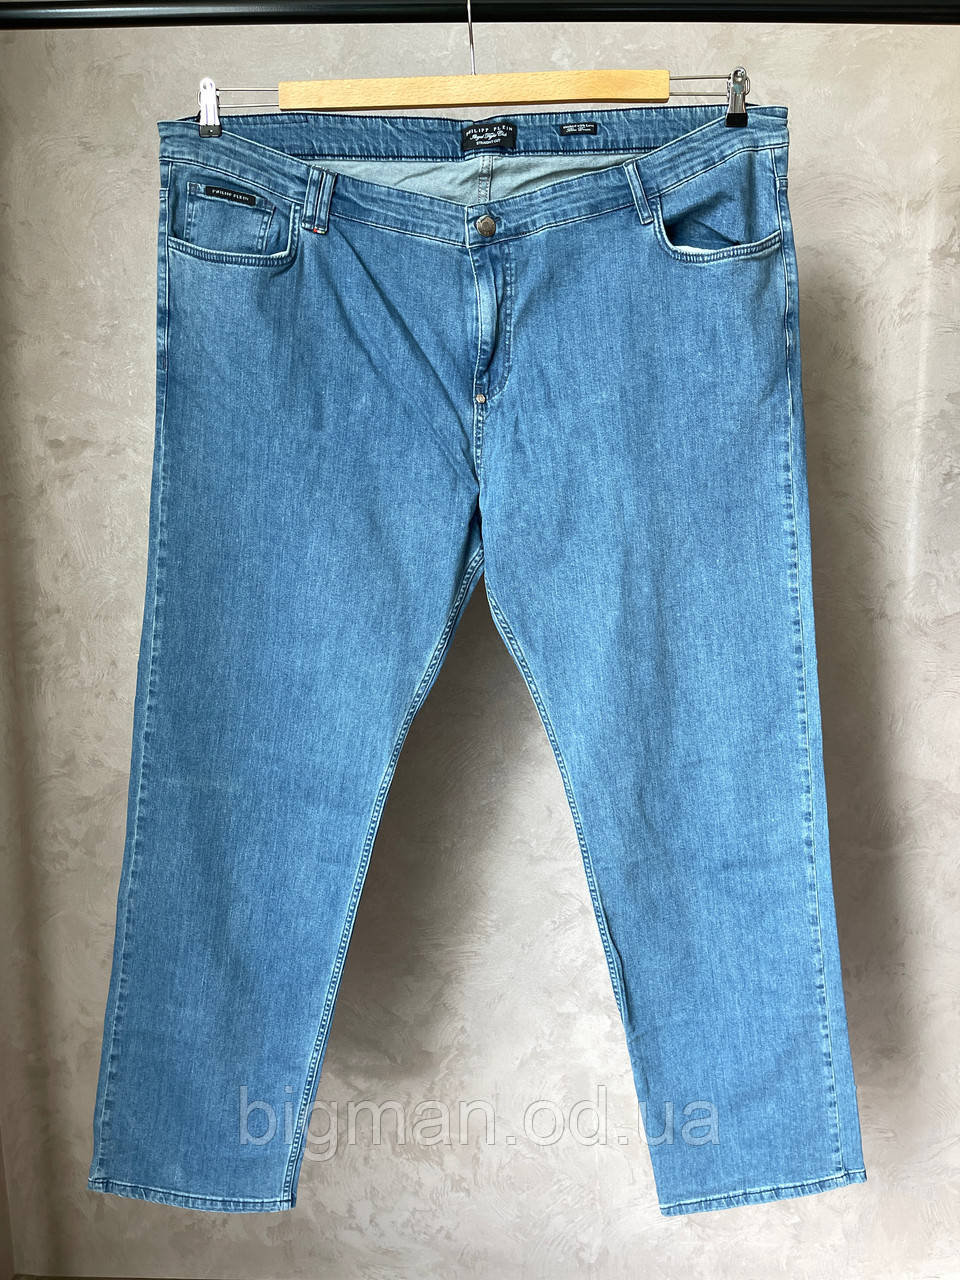 Чоловічі джинси Grand la Vita (52 розмір) 20107 блакитні